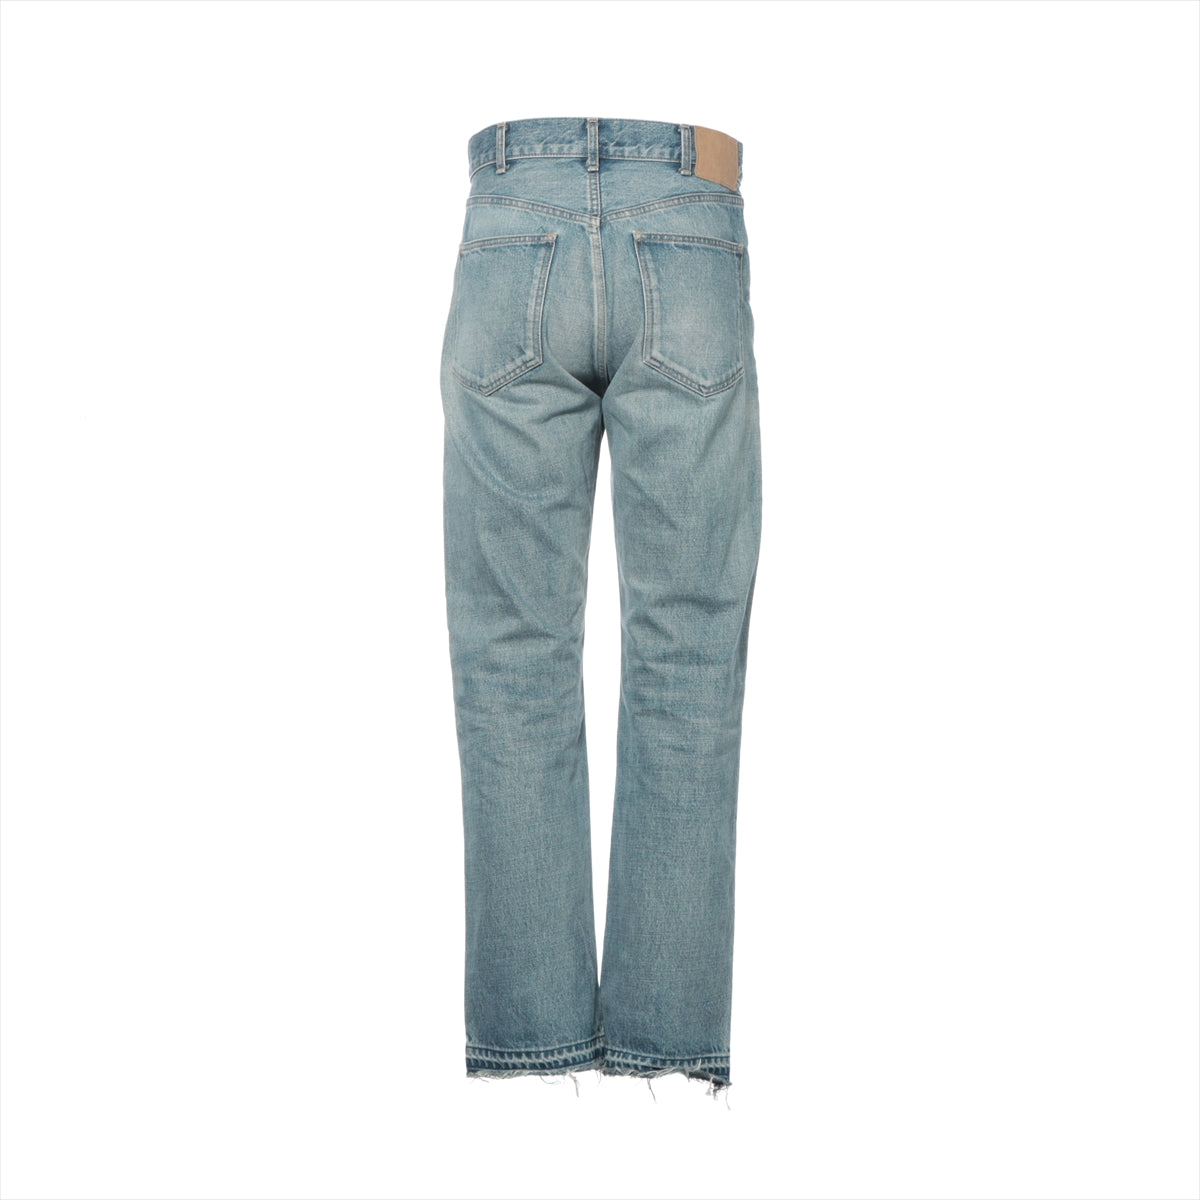 CELINE Cotton Denim pants 26 Men's Blue  Wesley low rise jeans N845206T08PI